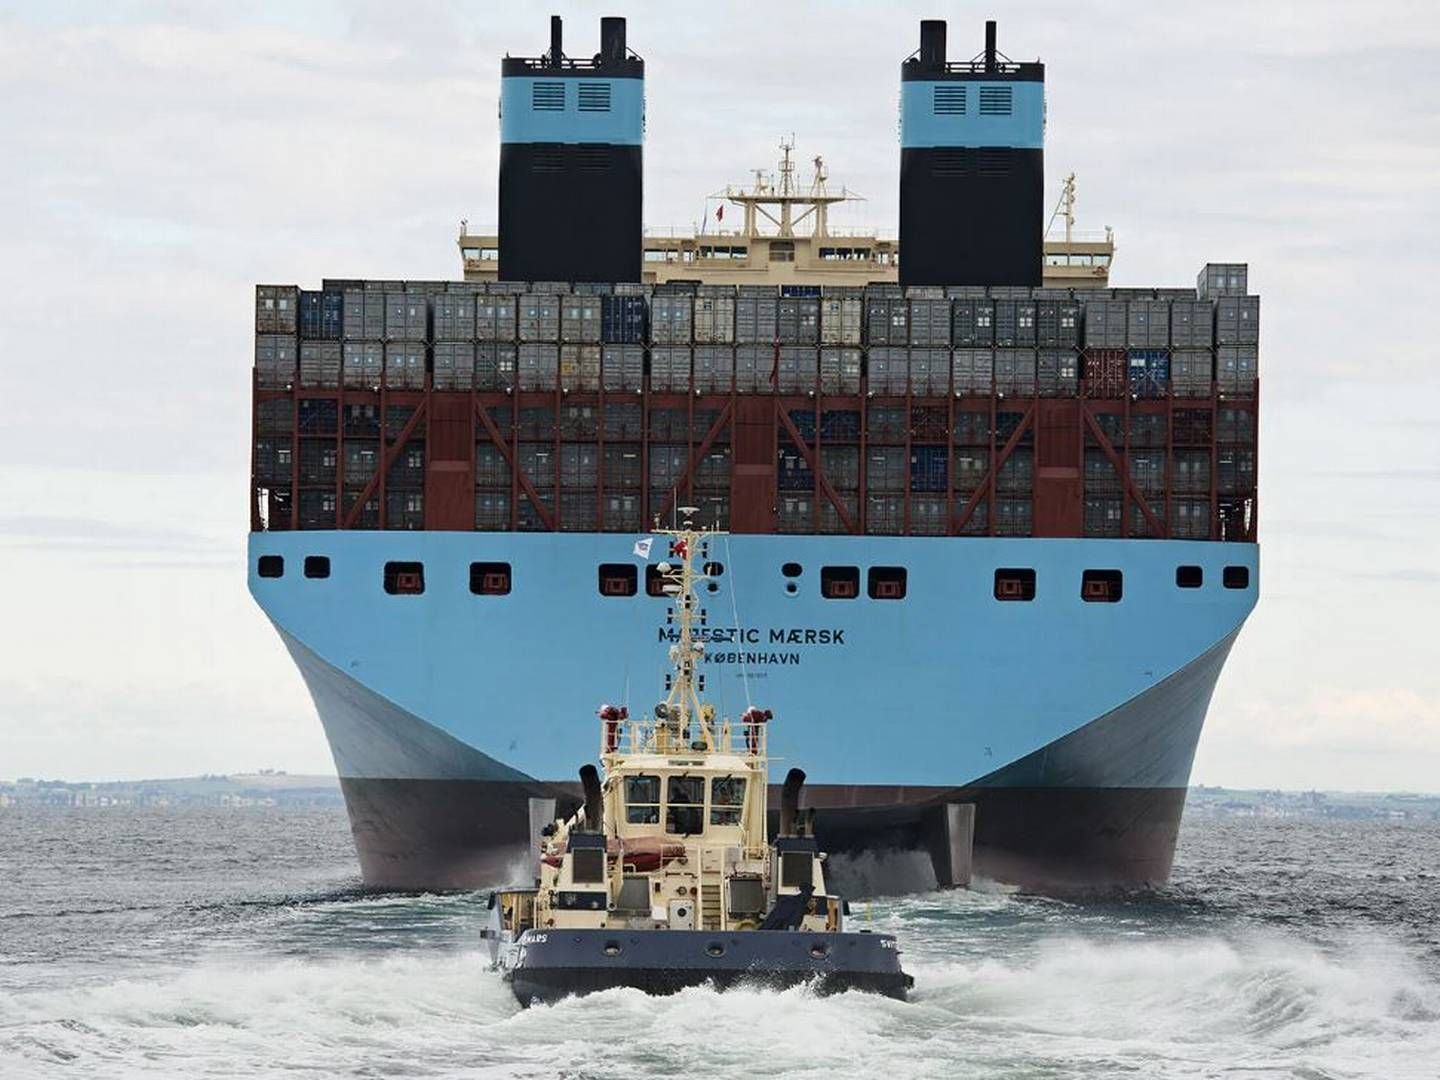 Maersk meldte torsdag ud, at slæbebådsrederiet Svitzer vil blive børsnoteret selvstændigt senere på året. | Foto: Pr / Svitzer